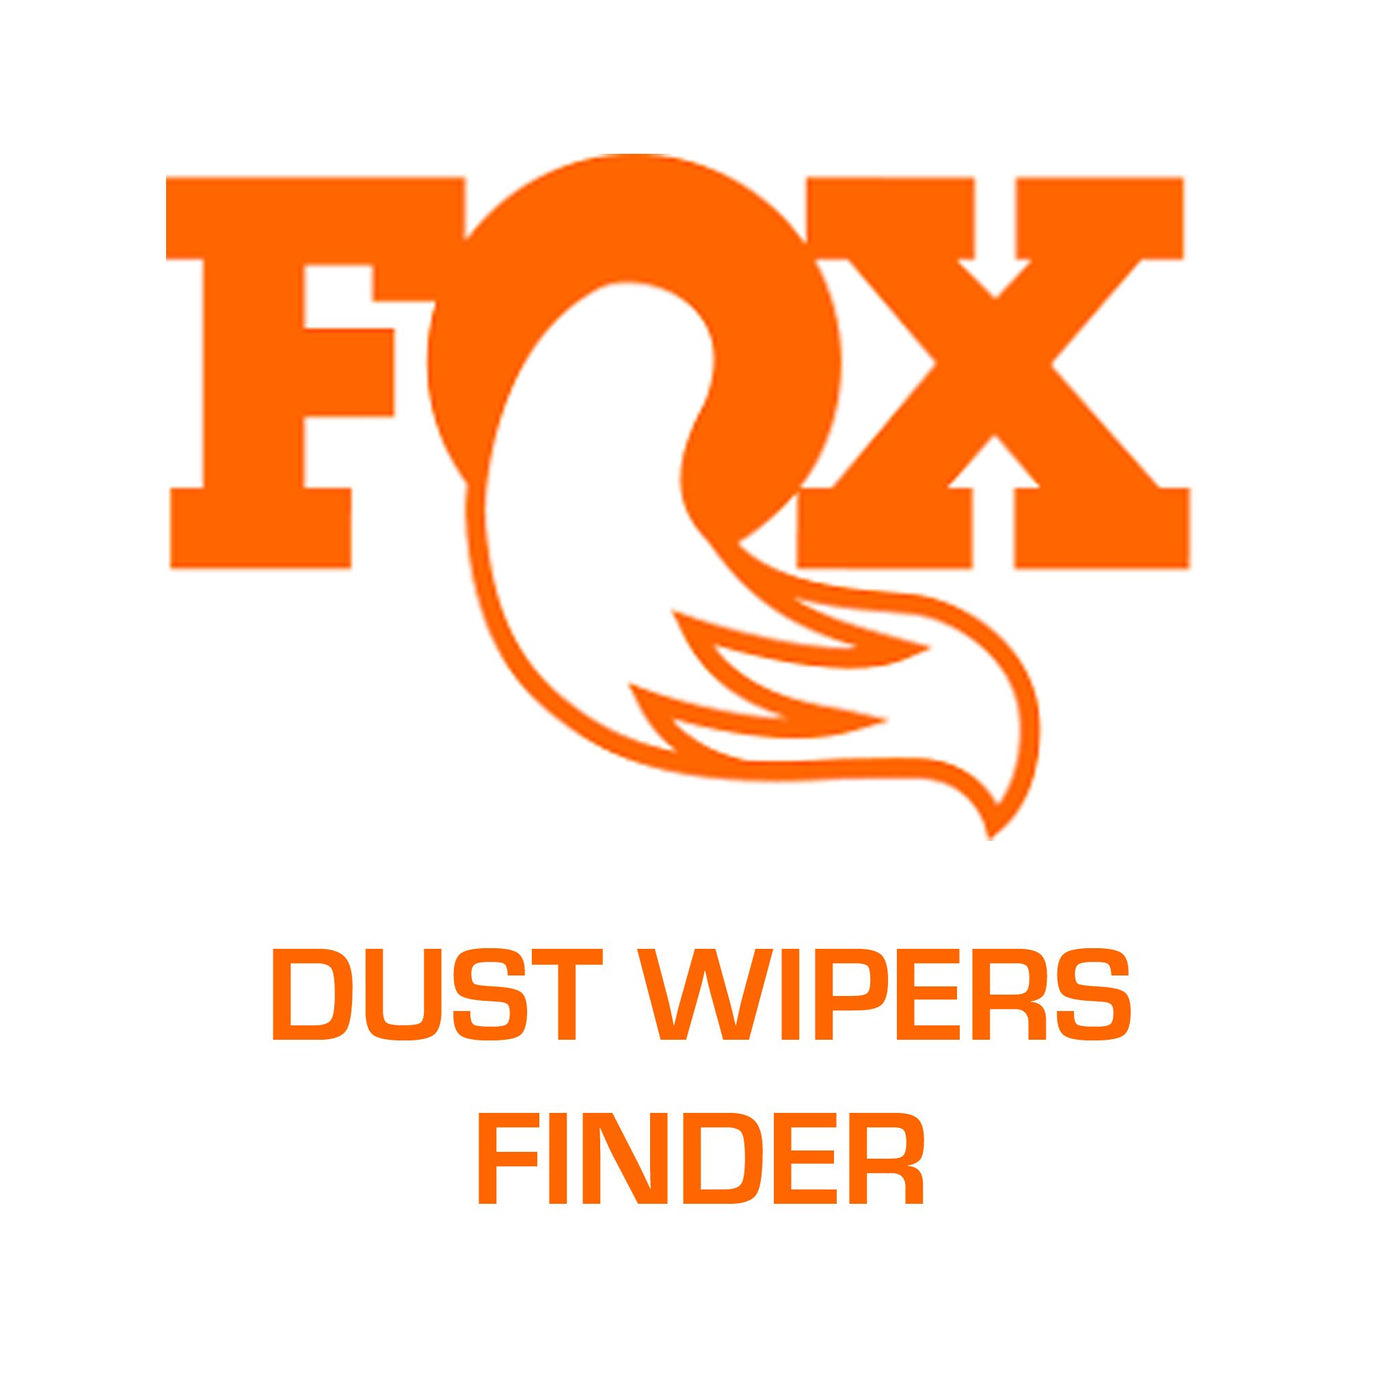 Fox Dust wiper finder